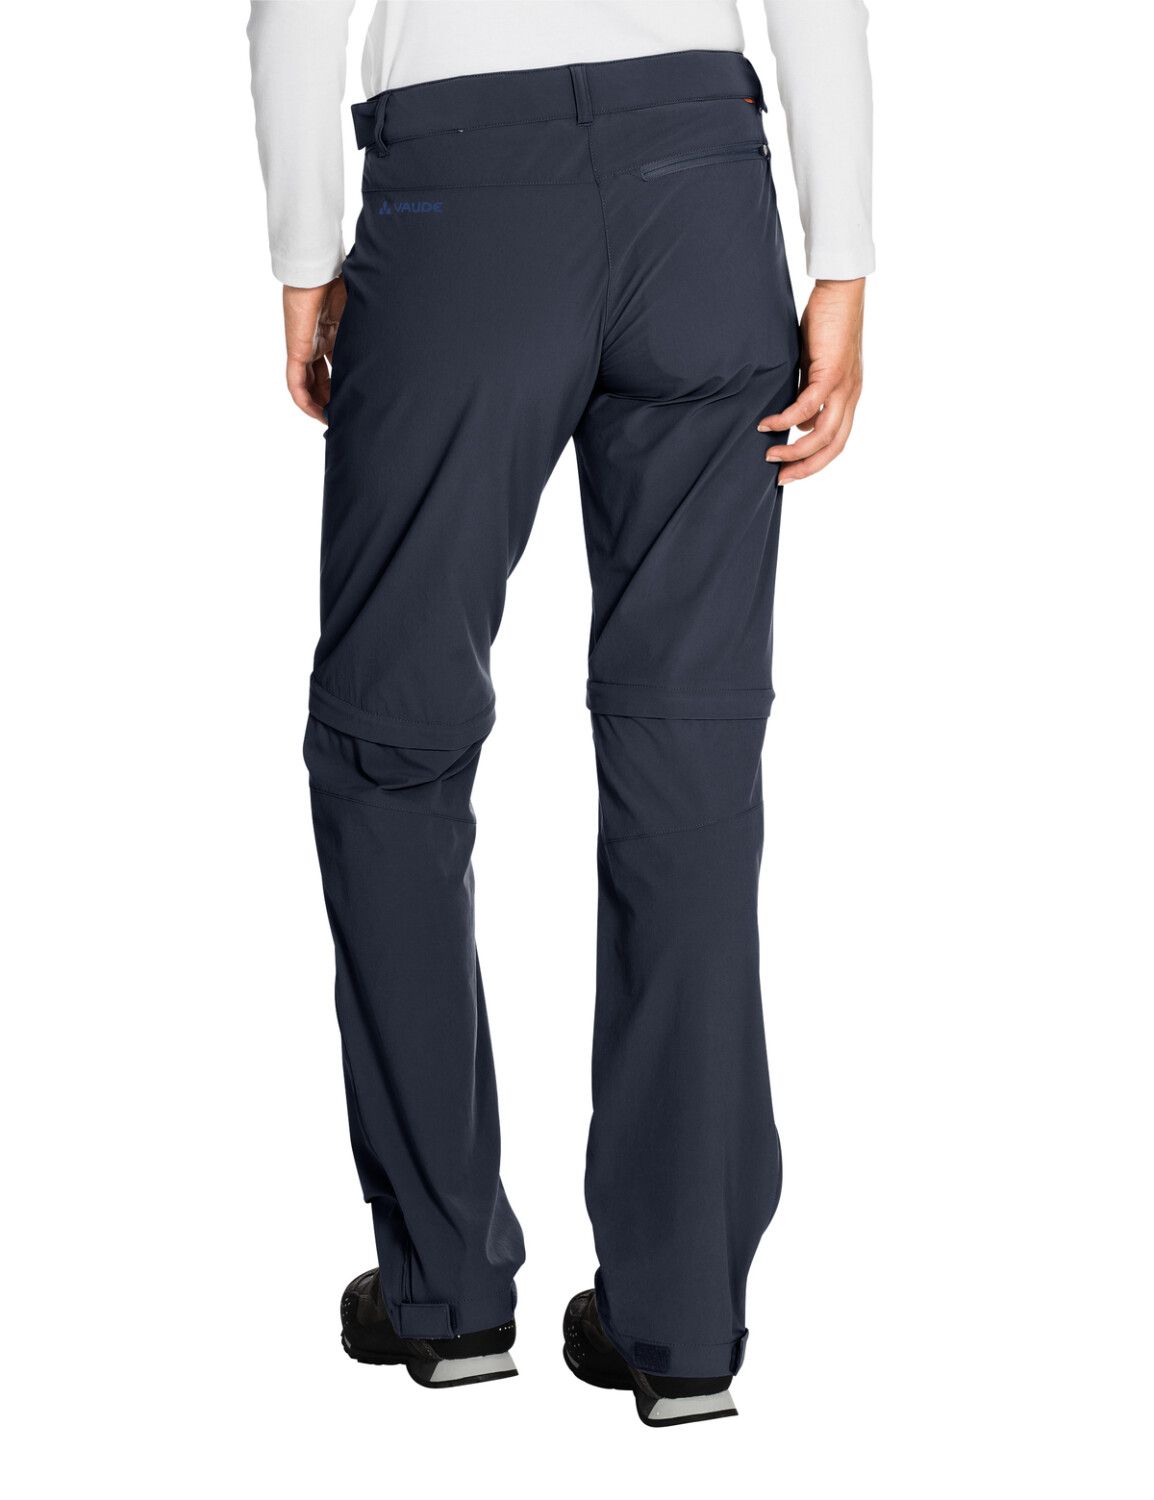 VAUDE Women's Farley Stretch ZO T-Zip Pants (Bild 51)